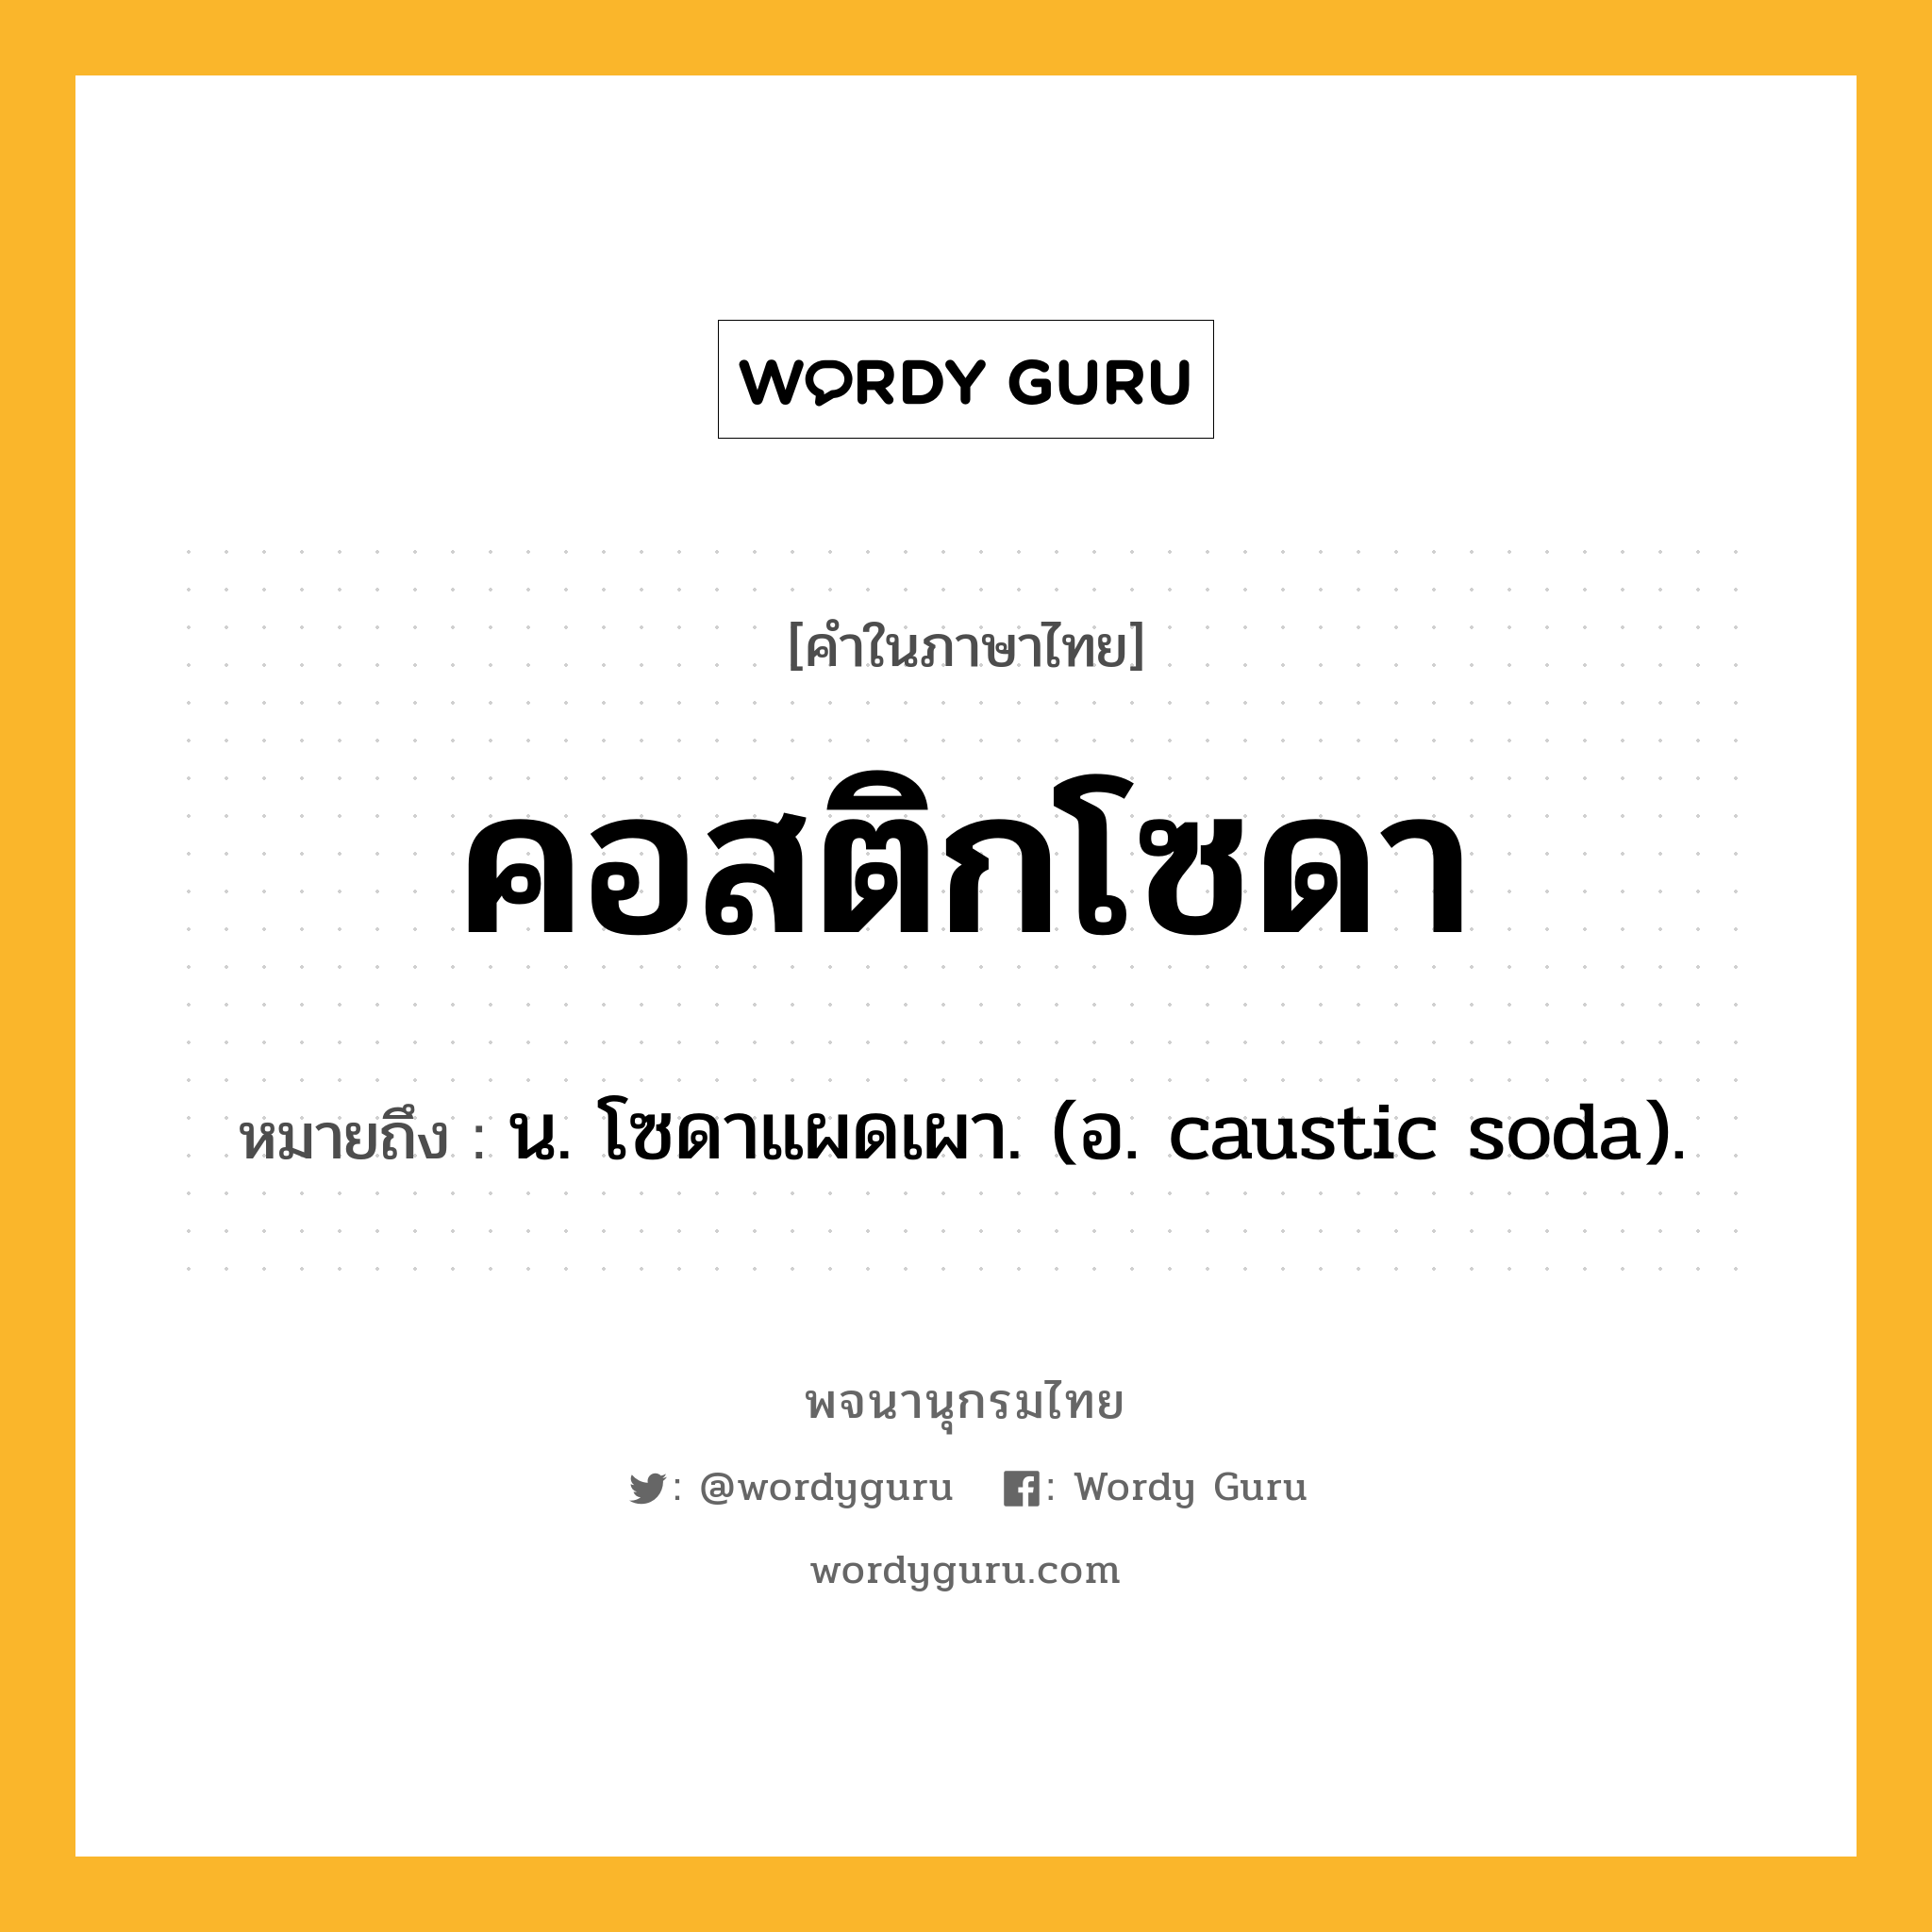 คอสติกโซดา หมายถึงอะไร?, คำในภาษาไทย คอสติกโซดา หมายถึง น. โซดาแผดเผา. (อ. caustic soda).